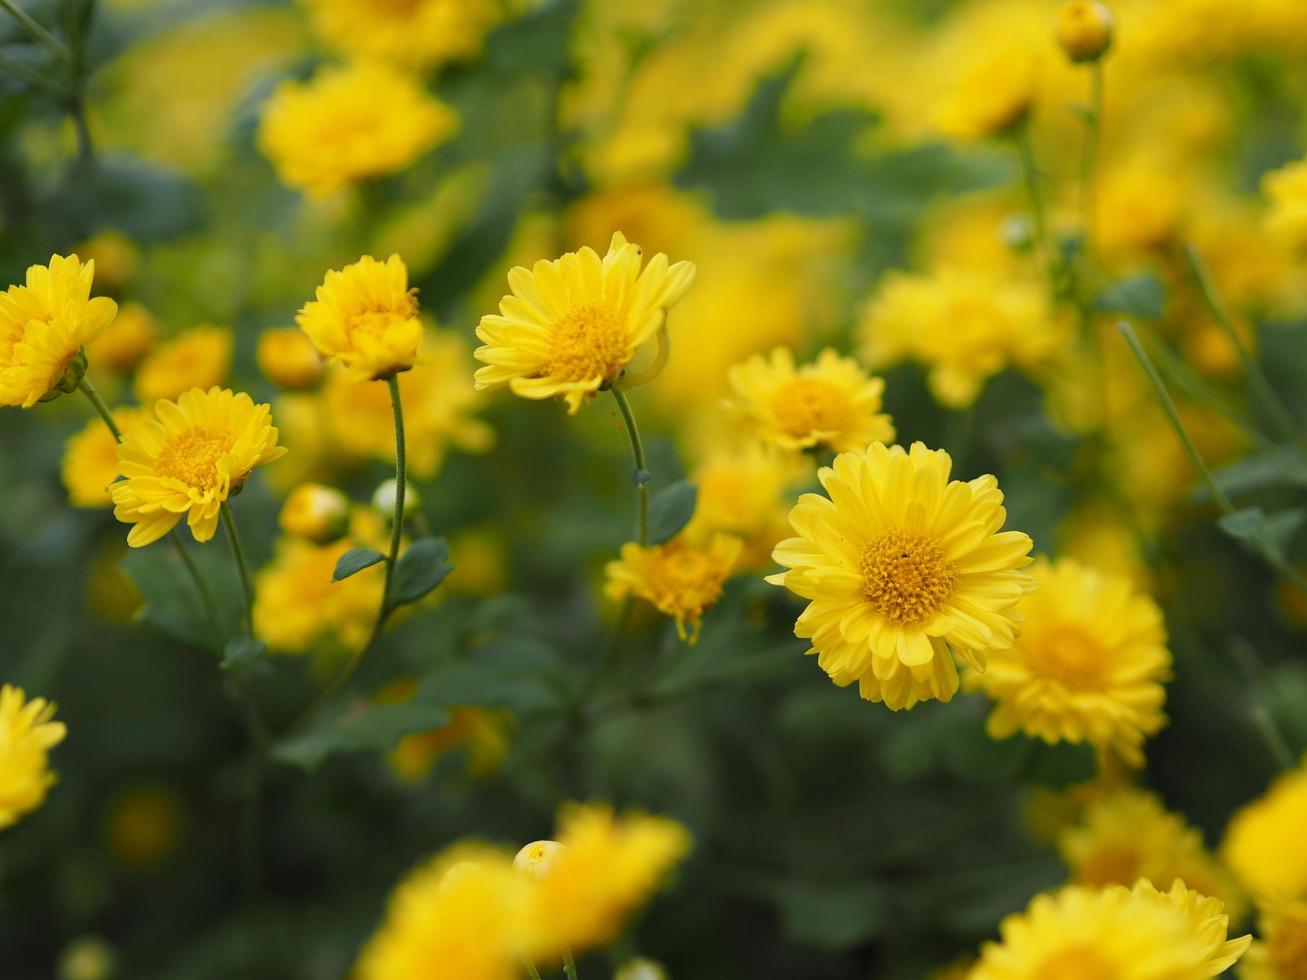 crisântemo indicum nome científico dendranthema morifolium, flavonóides, pólen closeup de flor amarela florescendo no jardim em turva de fundo da natureza foto